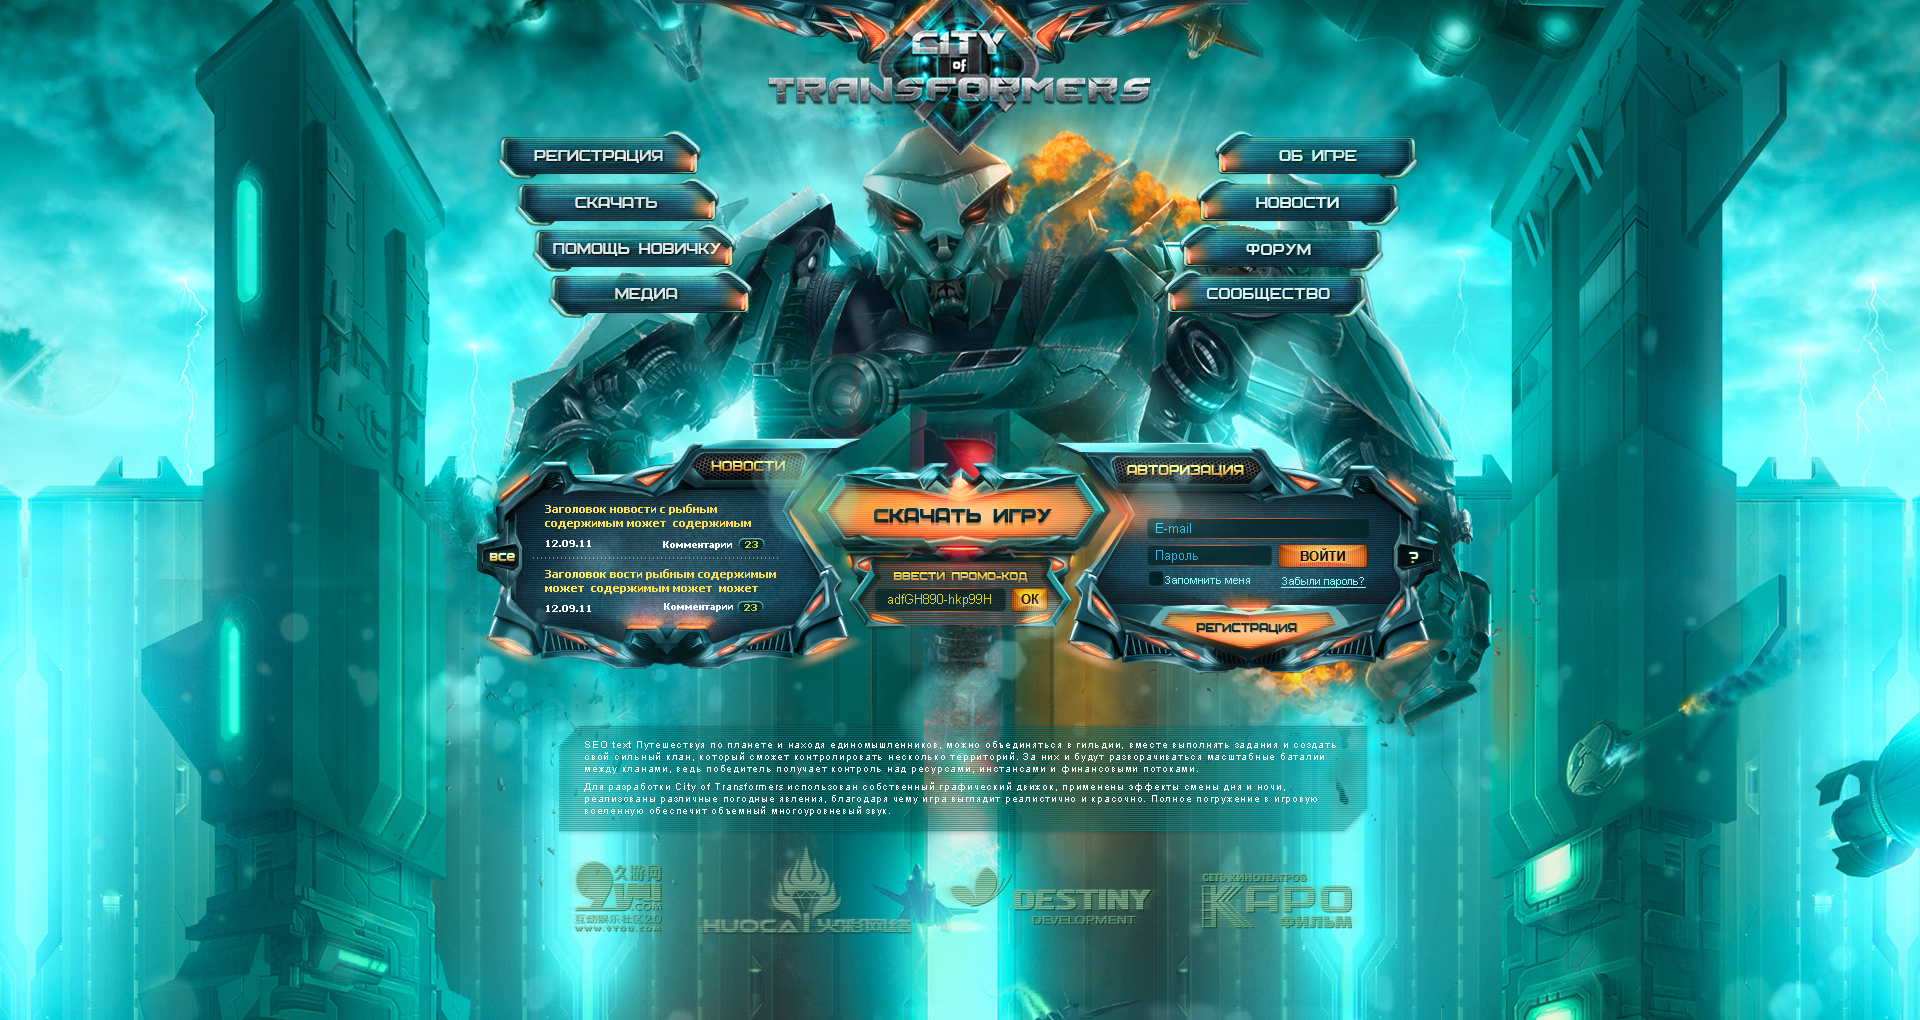 Дизайн интерфейса сайта для проекта City of Transformers